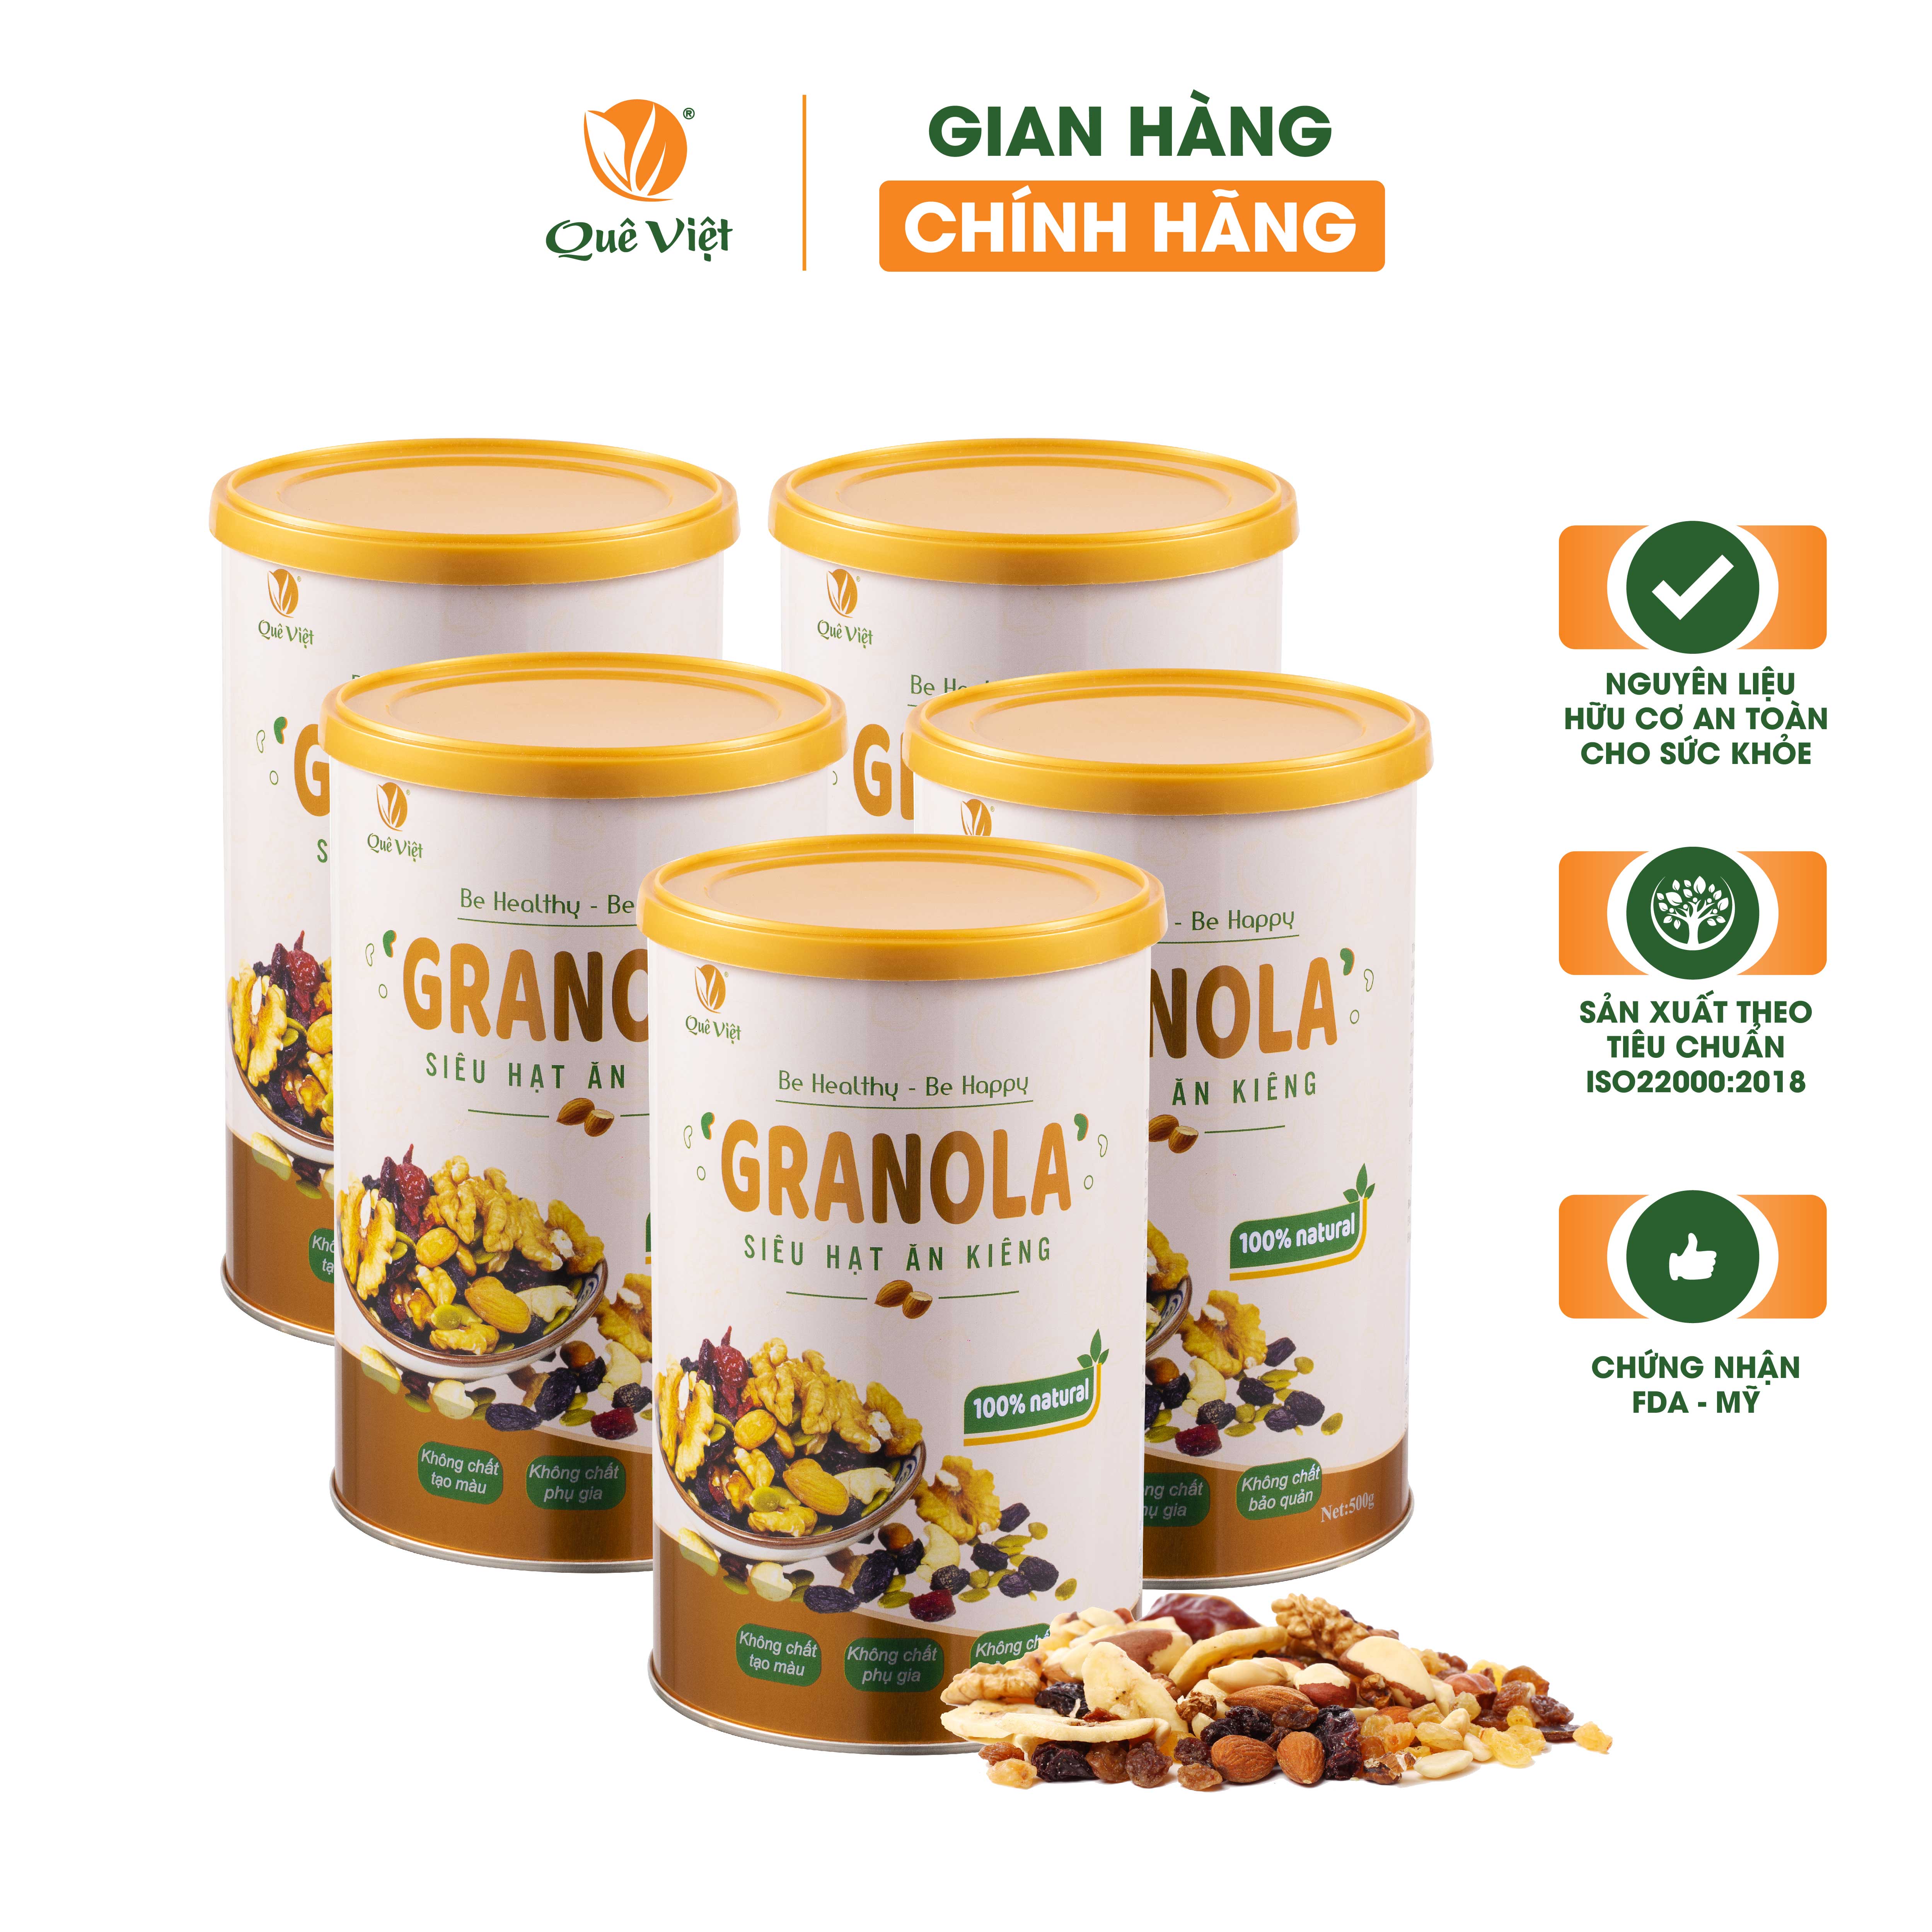 Granola siêu hạt ngũ cốc ăn kiêng Quê Việt, nguyên liệu hữu cơ - combo 5 hộp x 500g/hộp